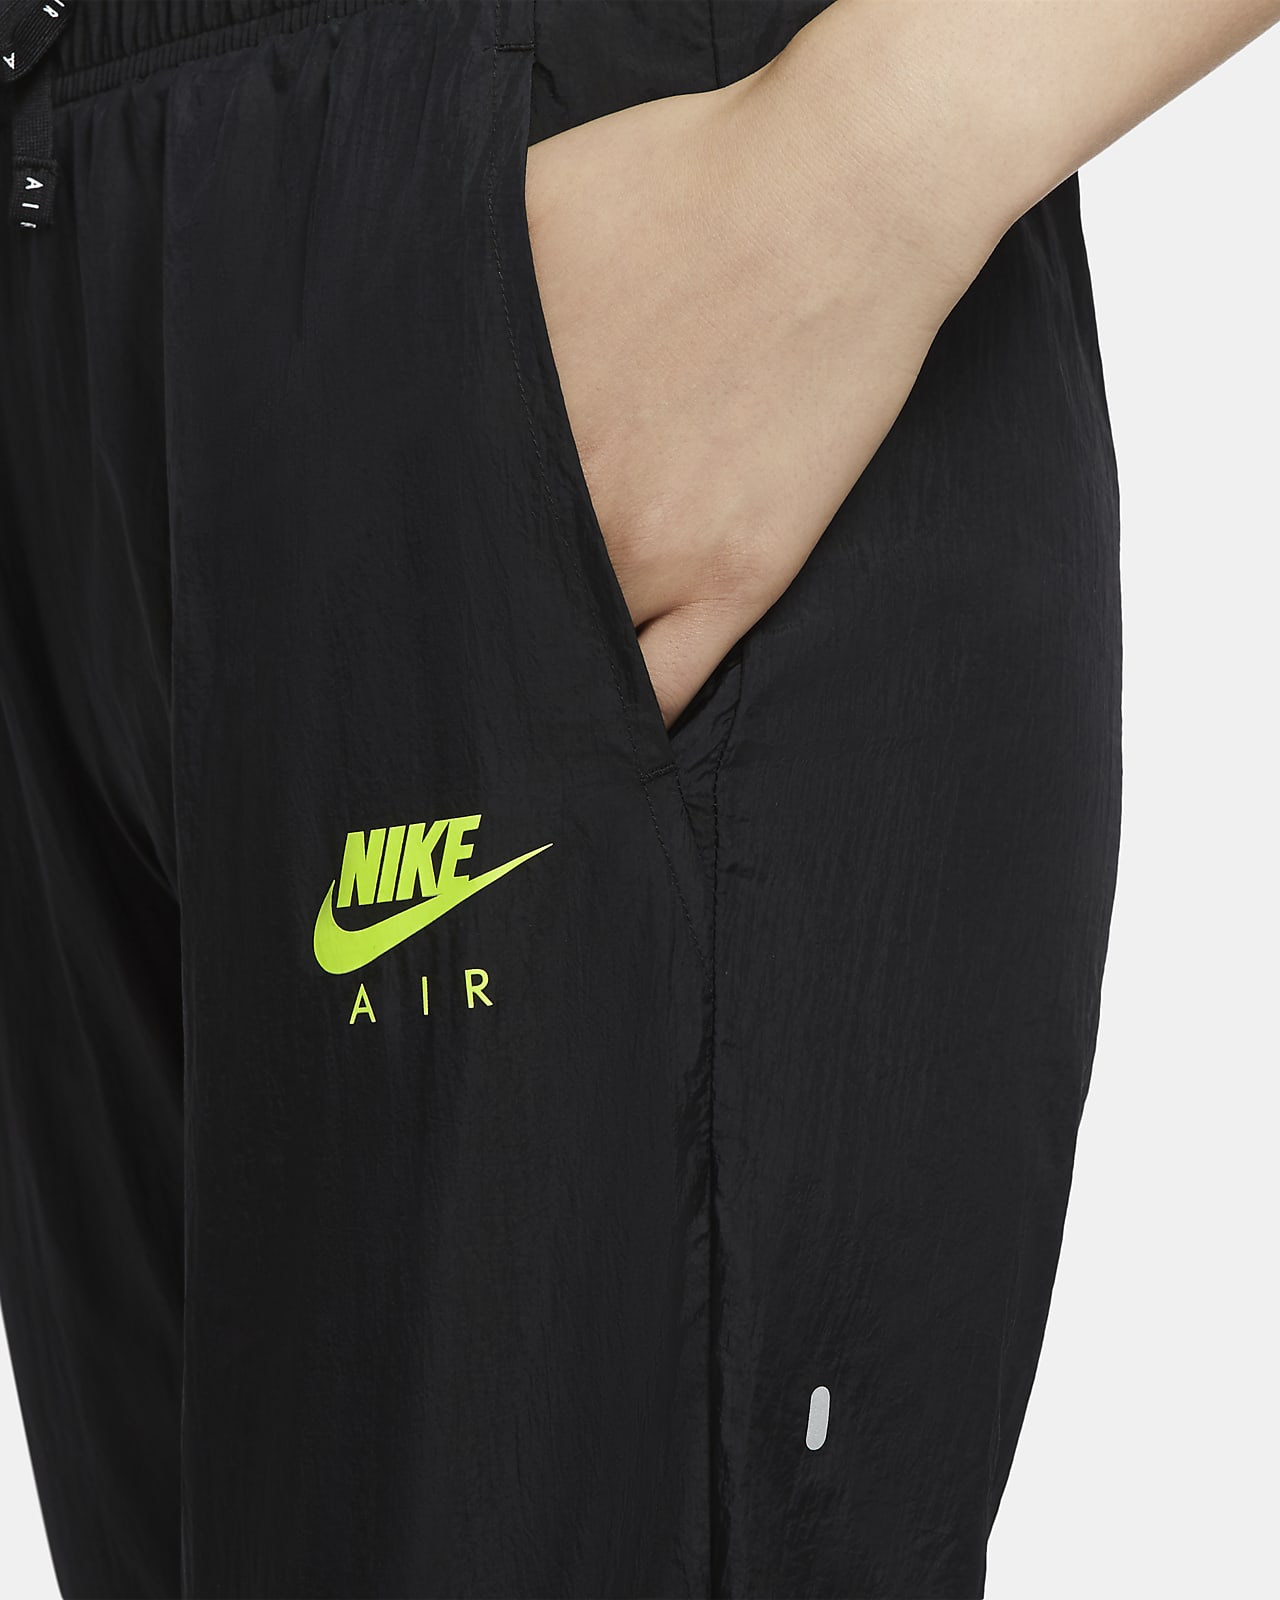 Nike Air Women's Running Trousers. Nike LU